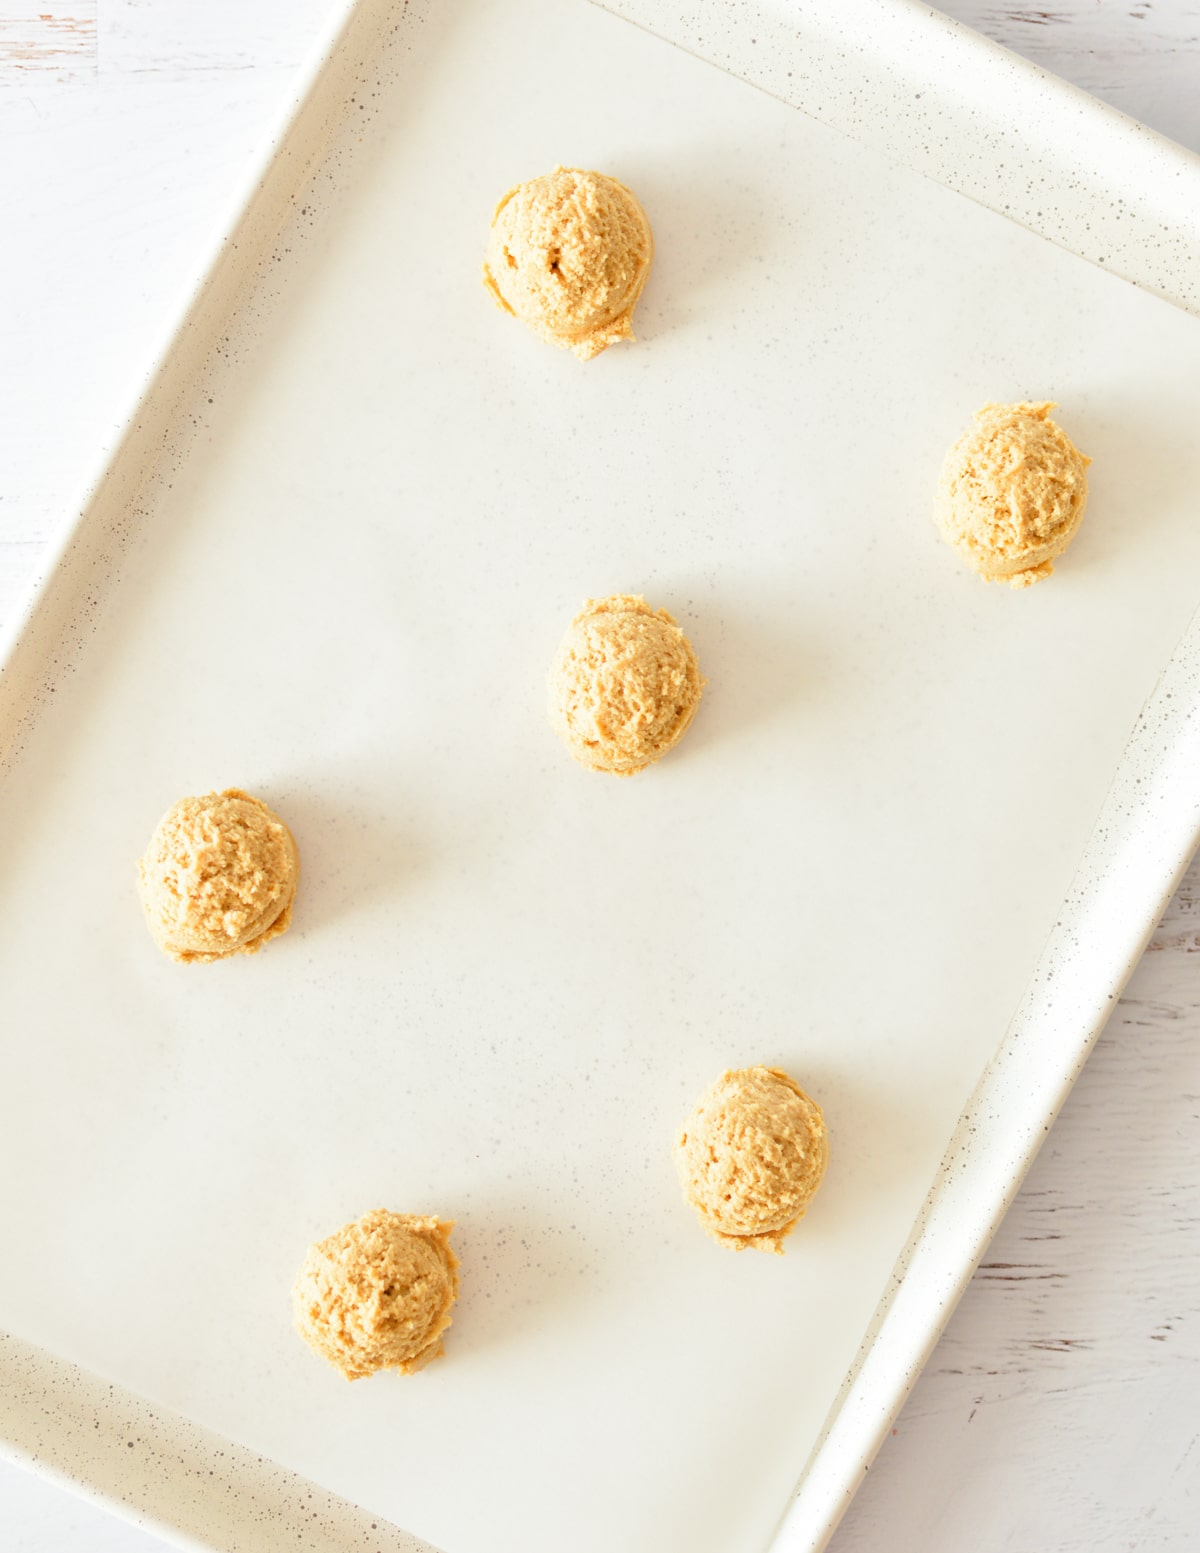 peanut butter cookie dough balls on sheet pan.